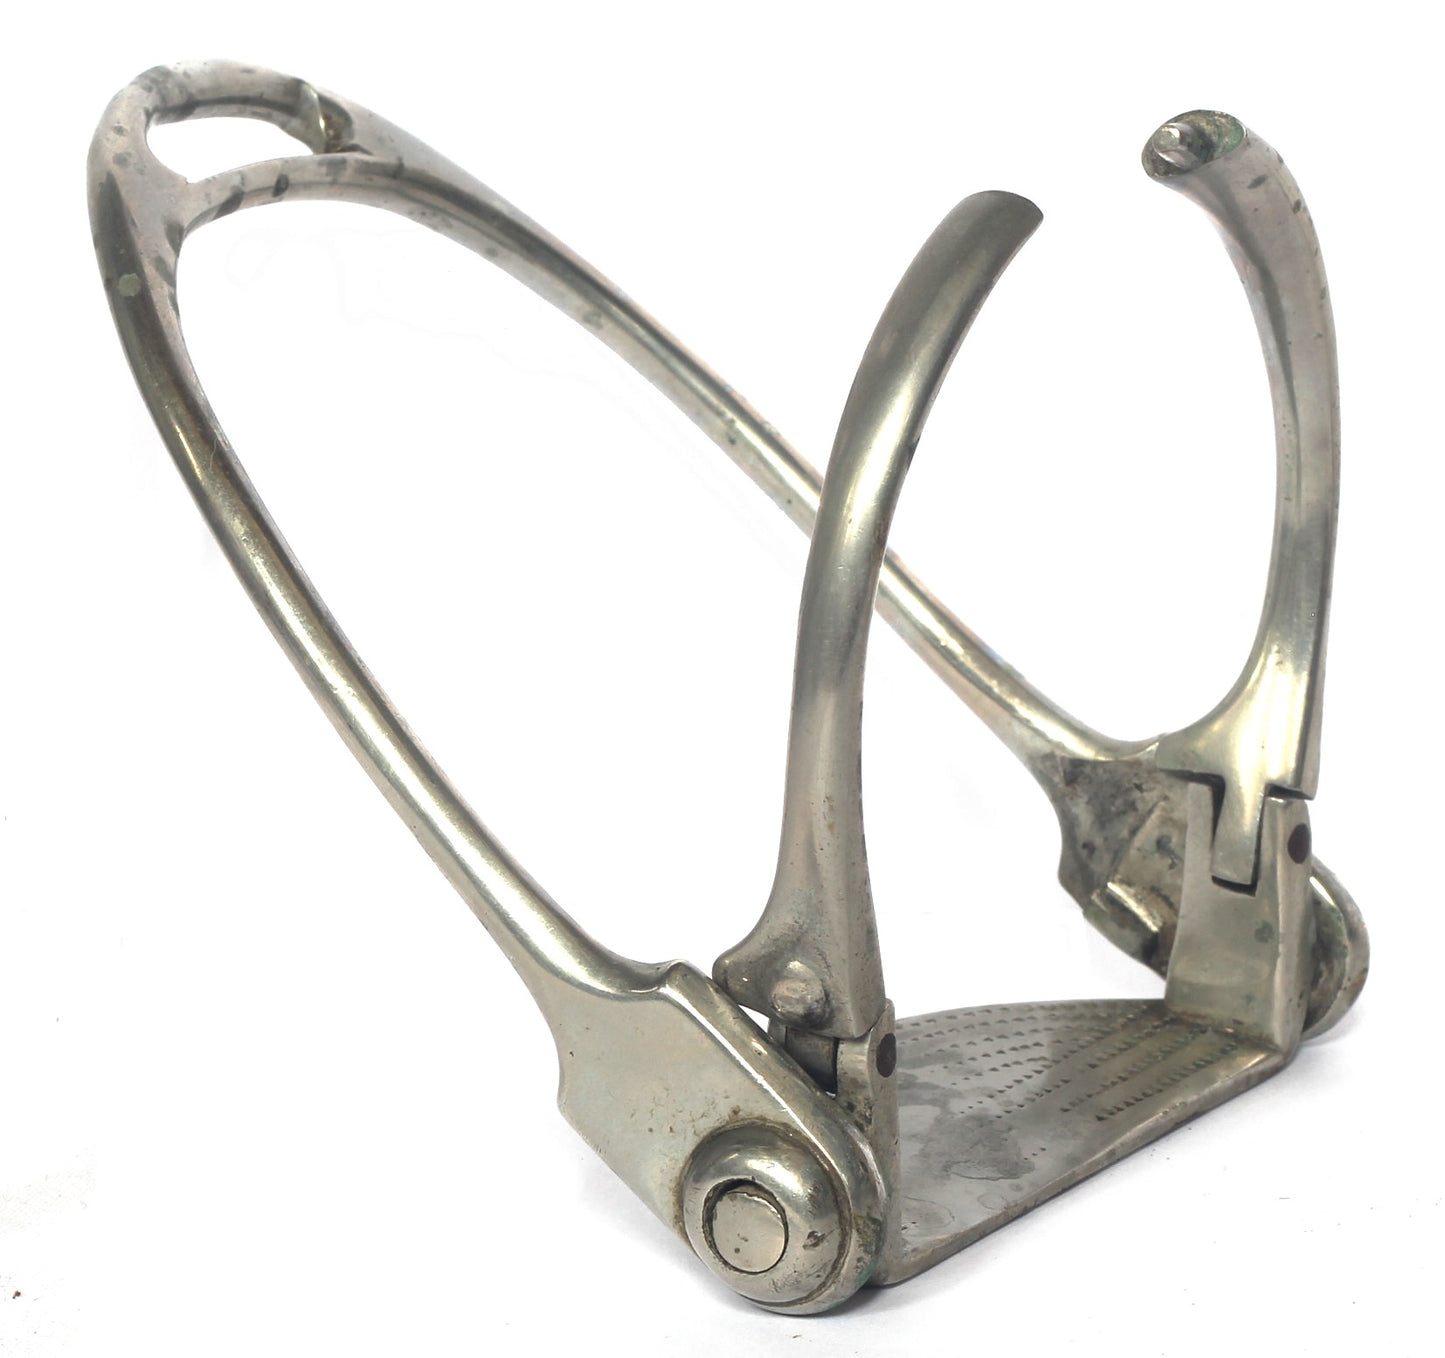 Vintage sidesaddle safety stirrup